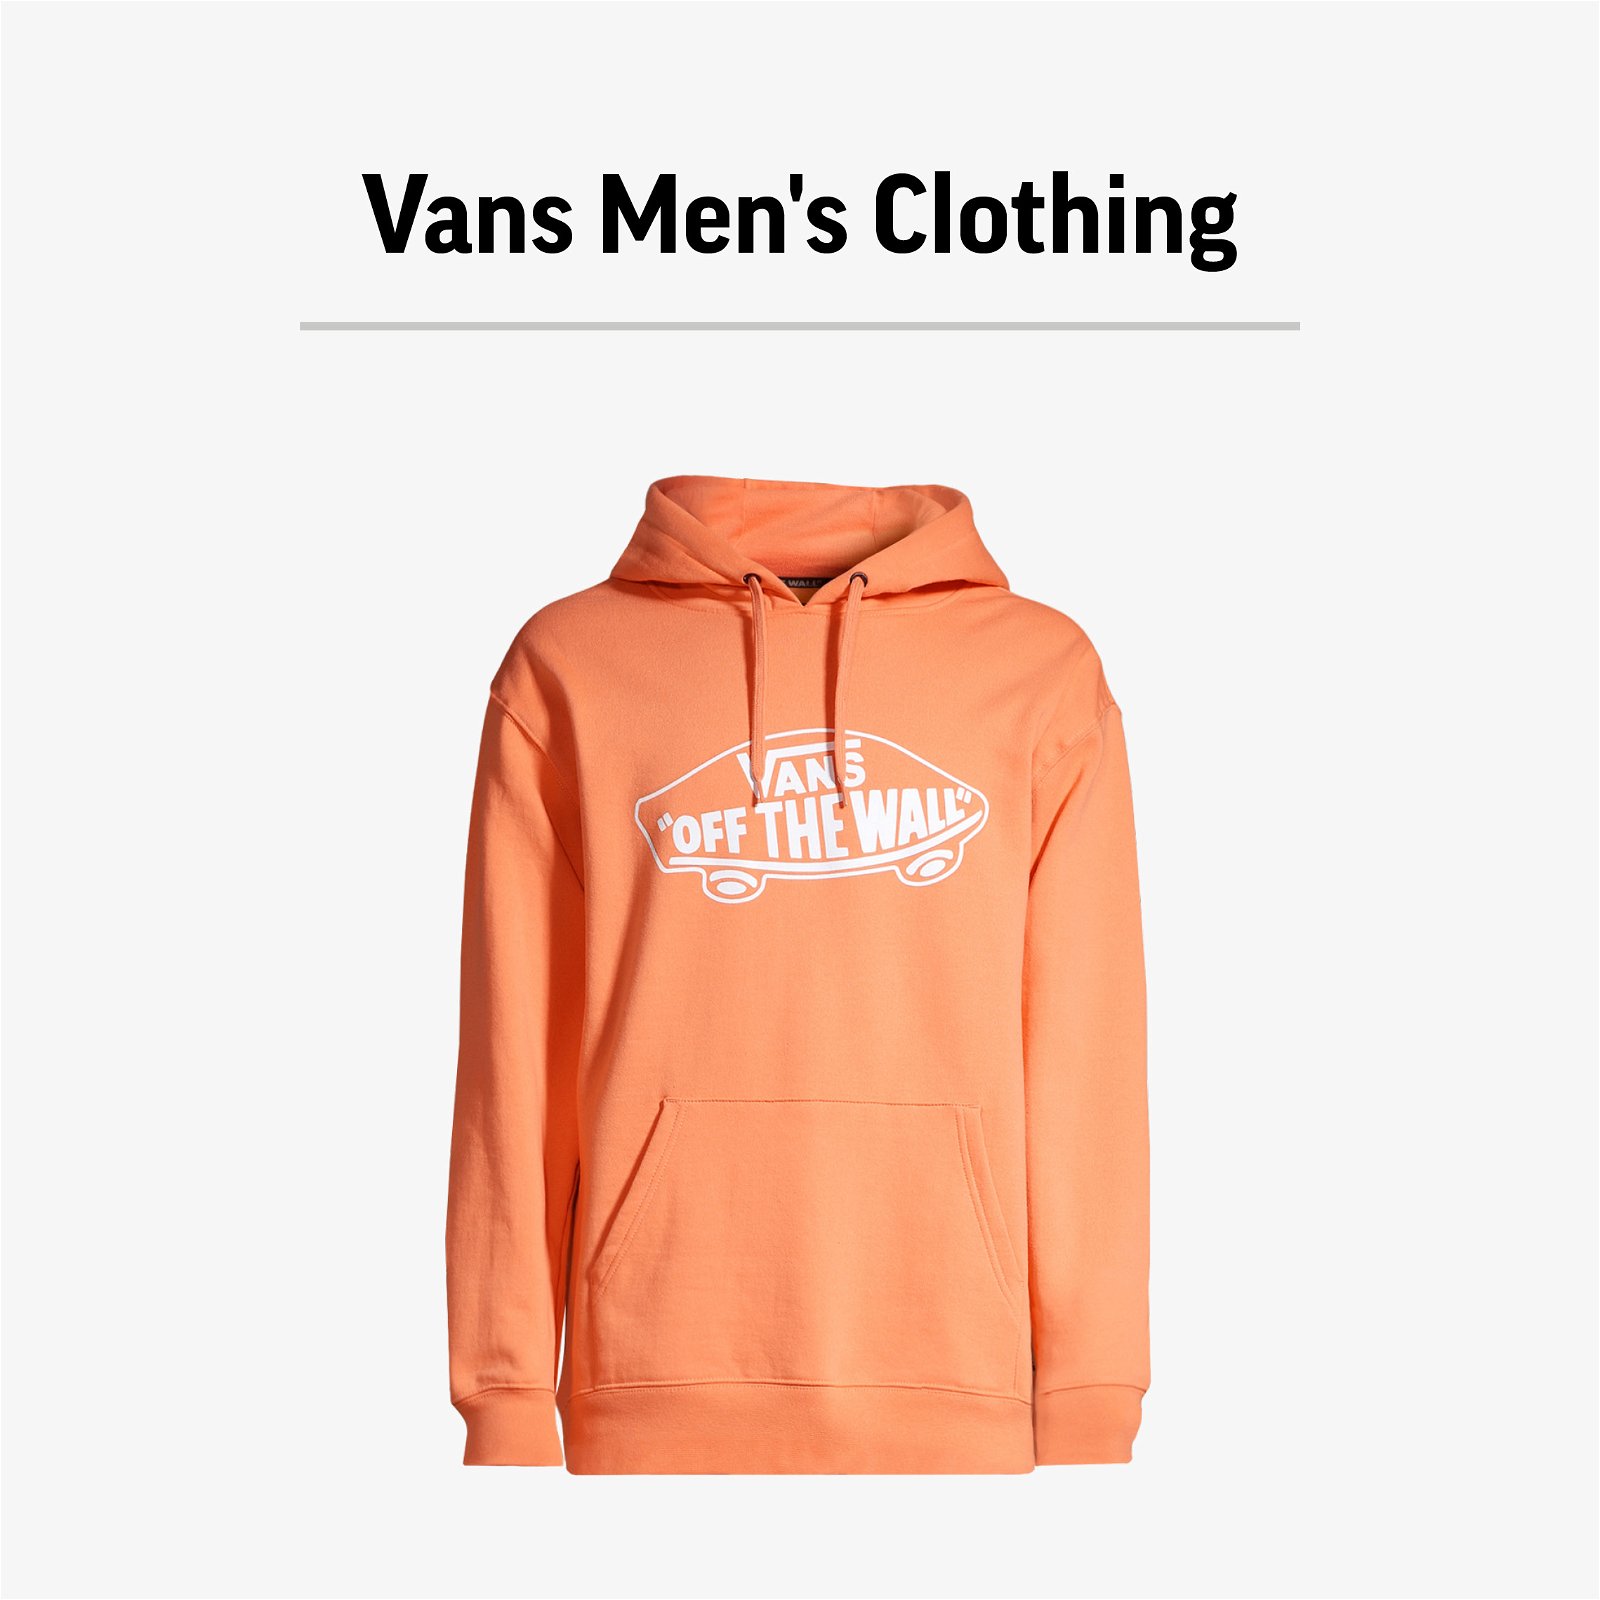 VANS MEN'S CLOTHING